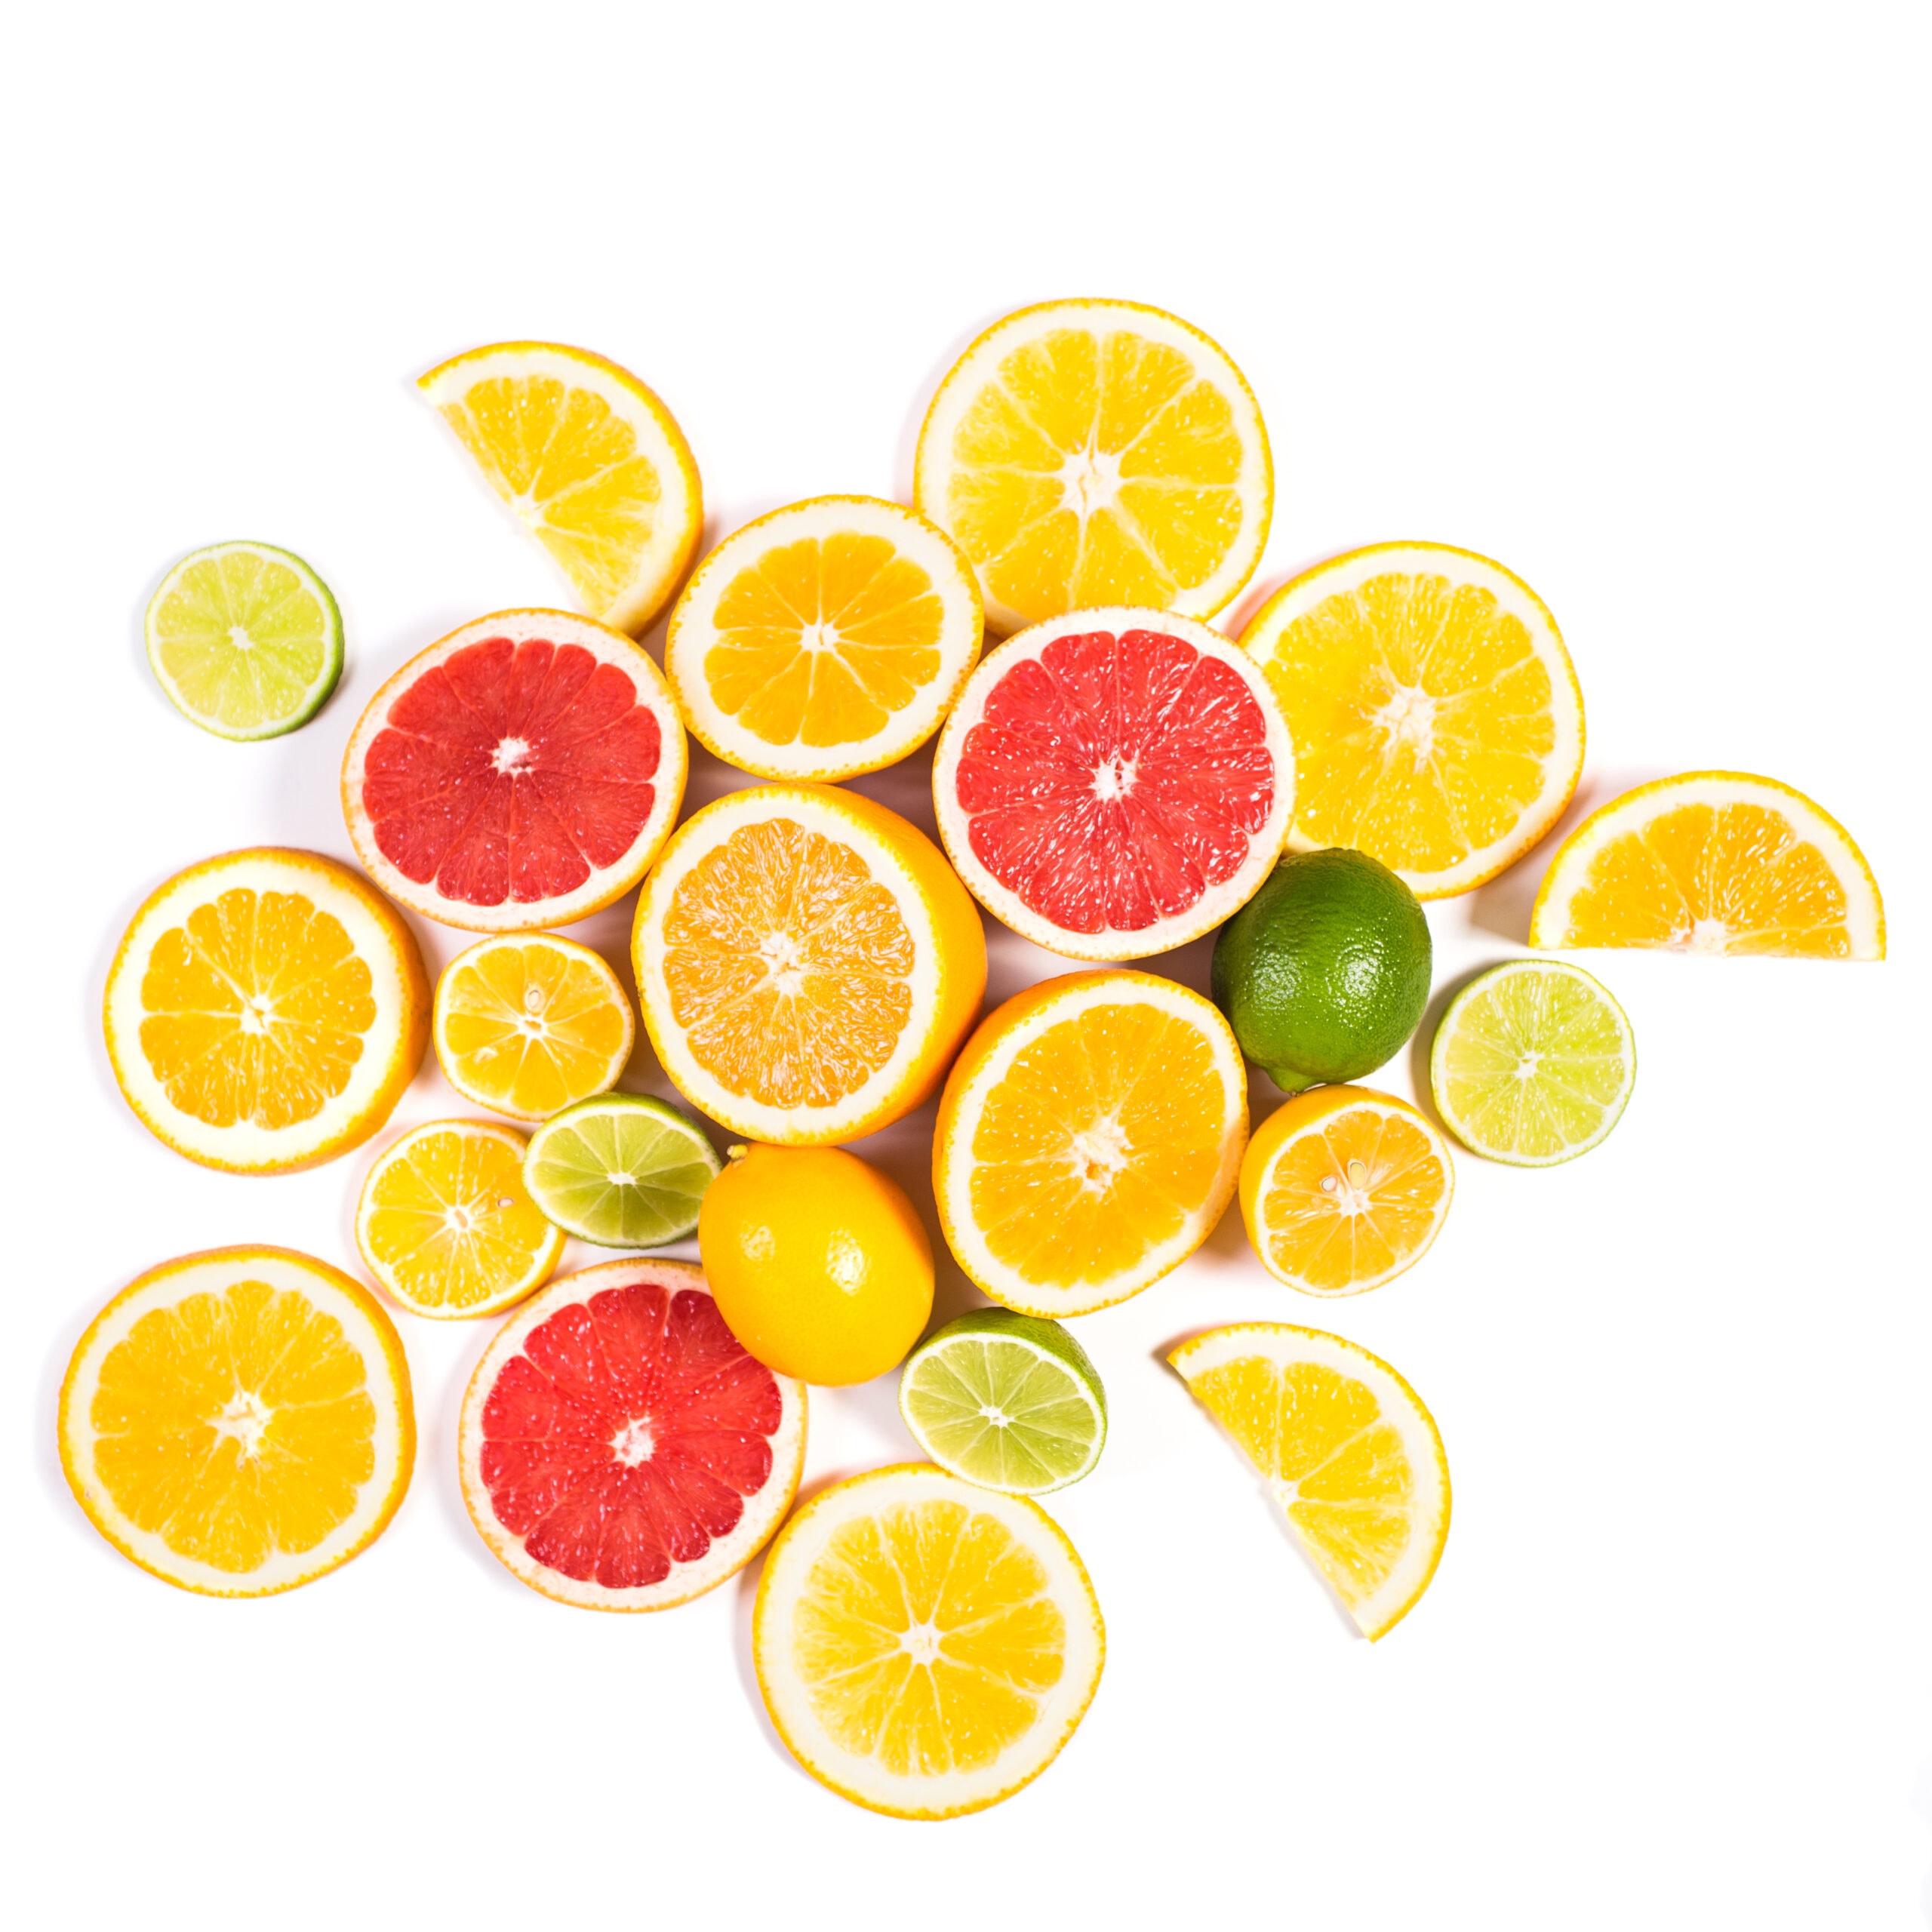 Fruit met vitamine C